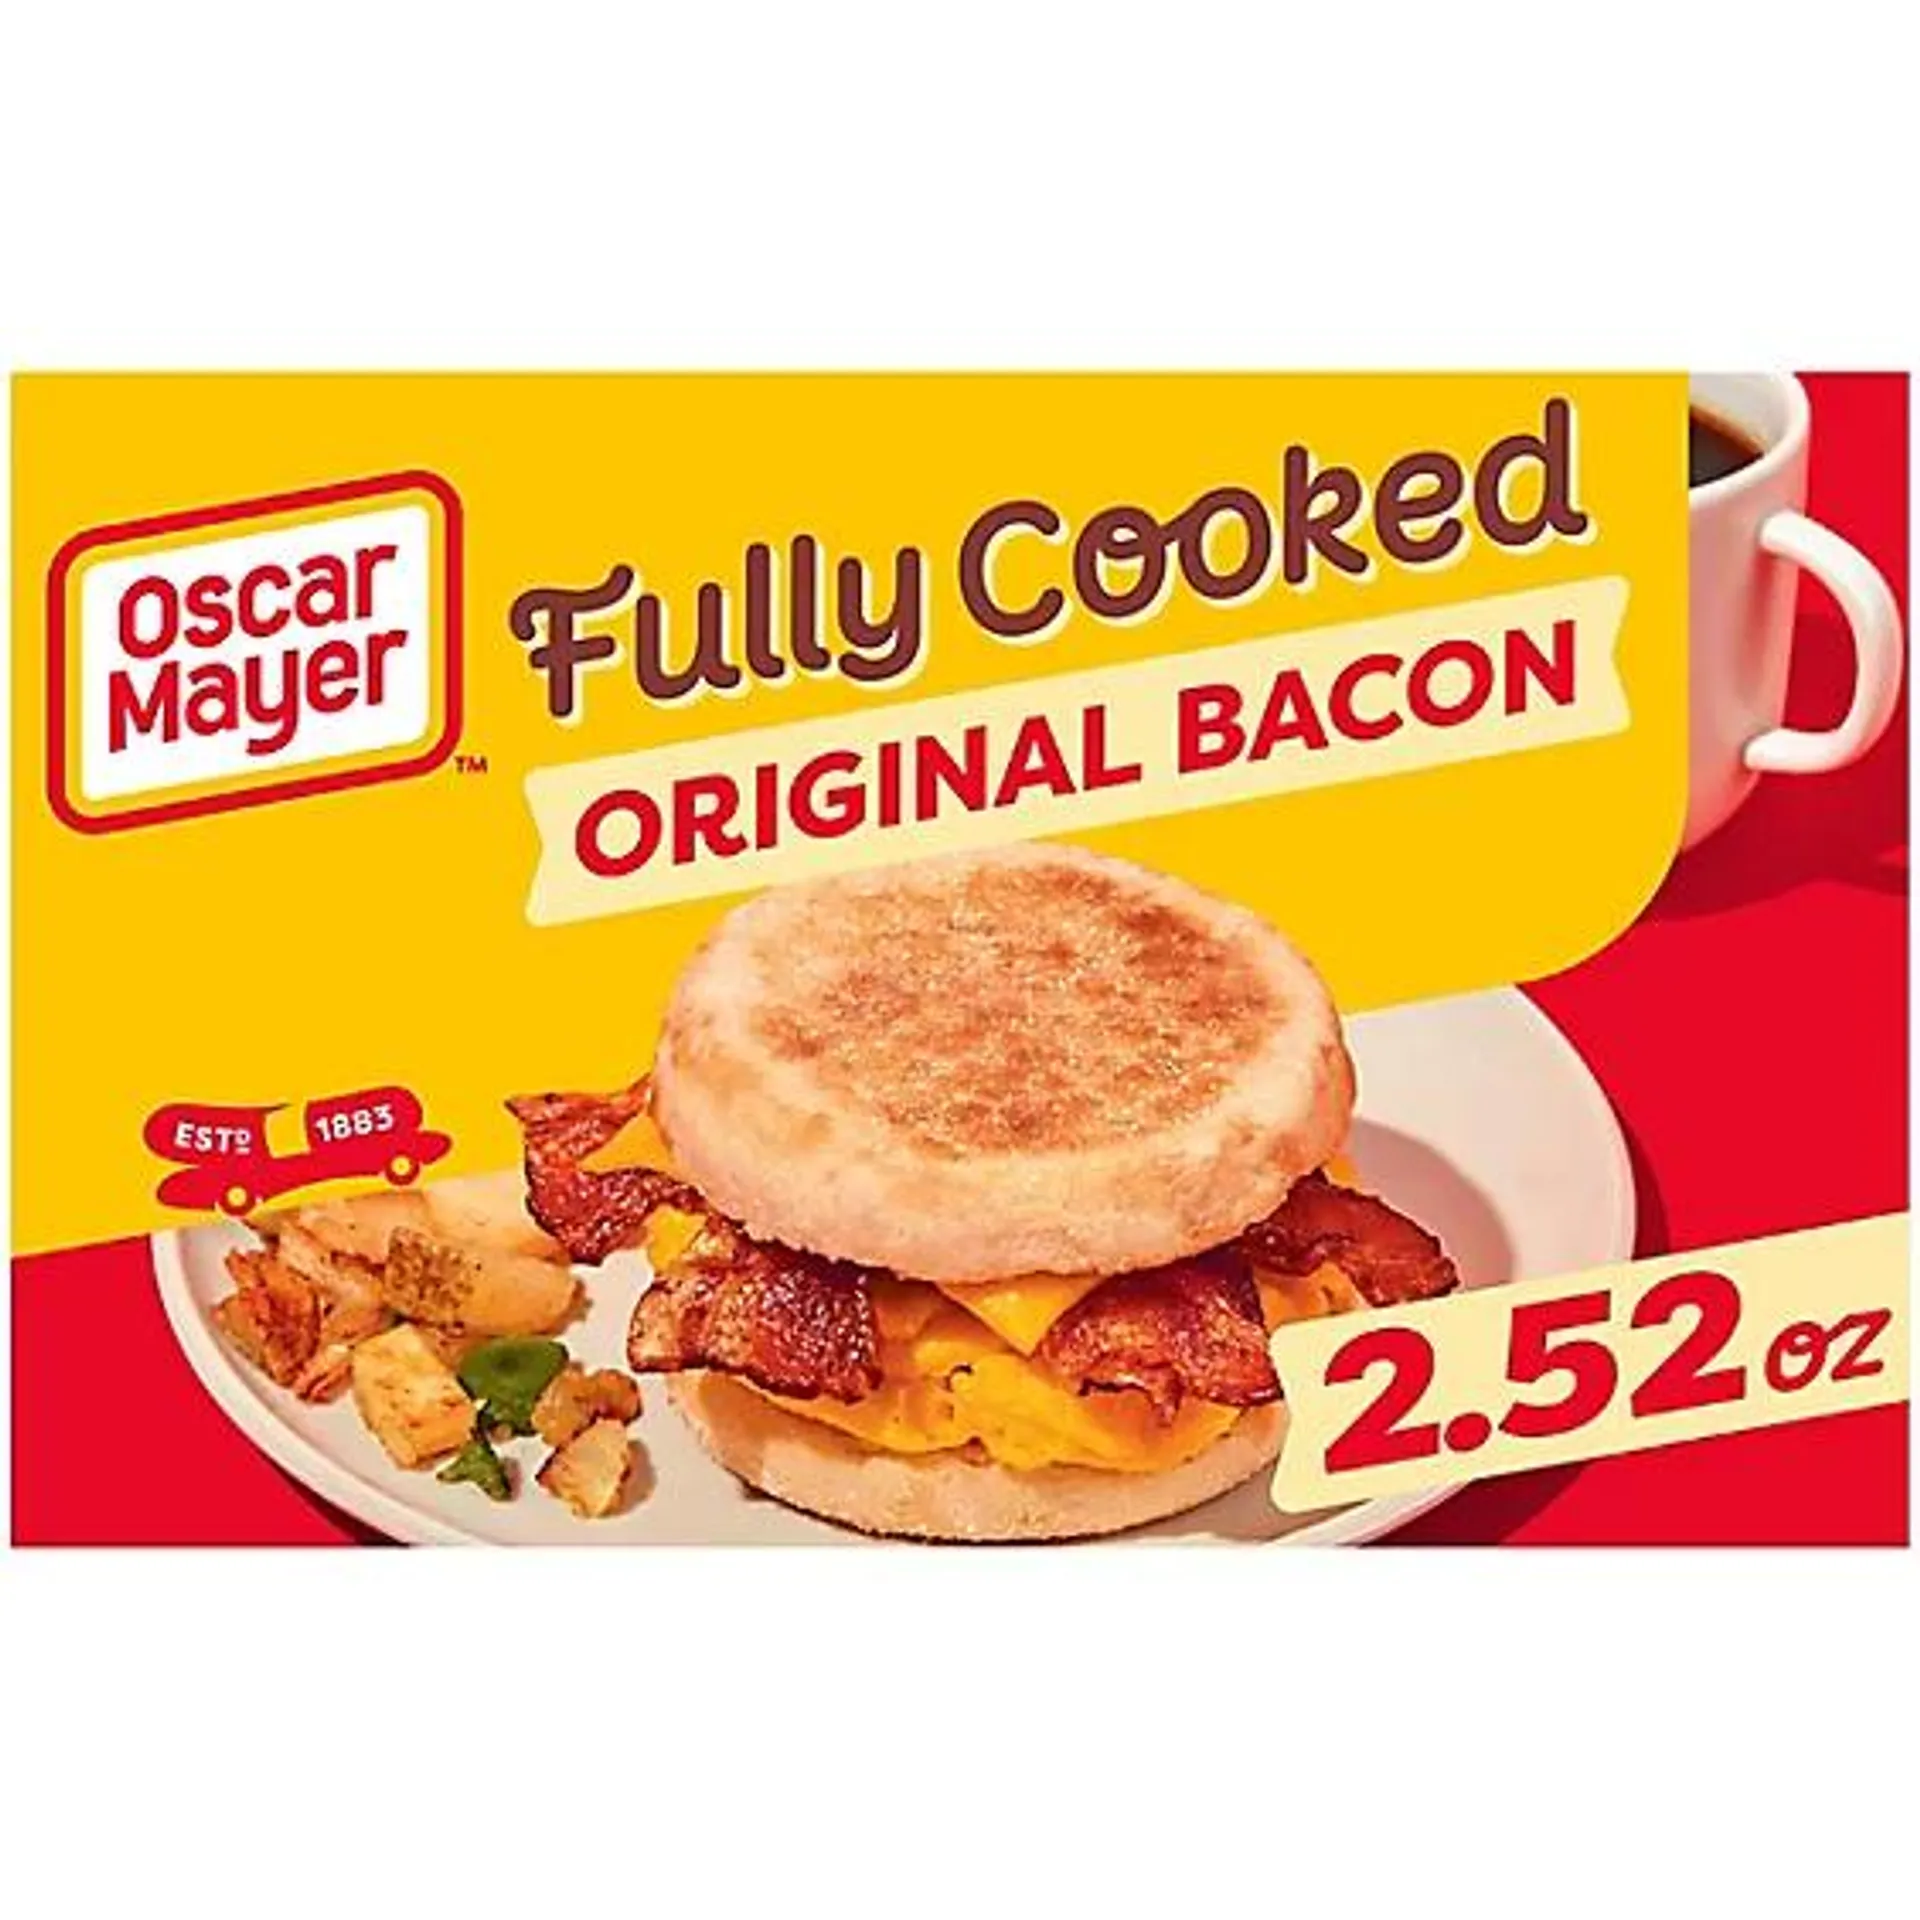 Oscar Mayer Original Fully Cooked Bacon Slices Box - 2.52 Oz